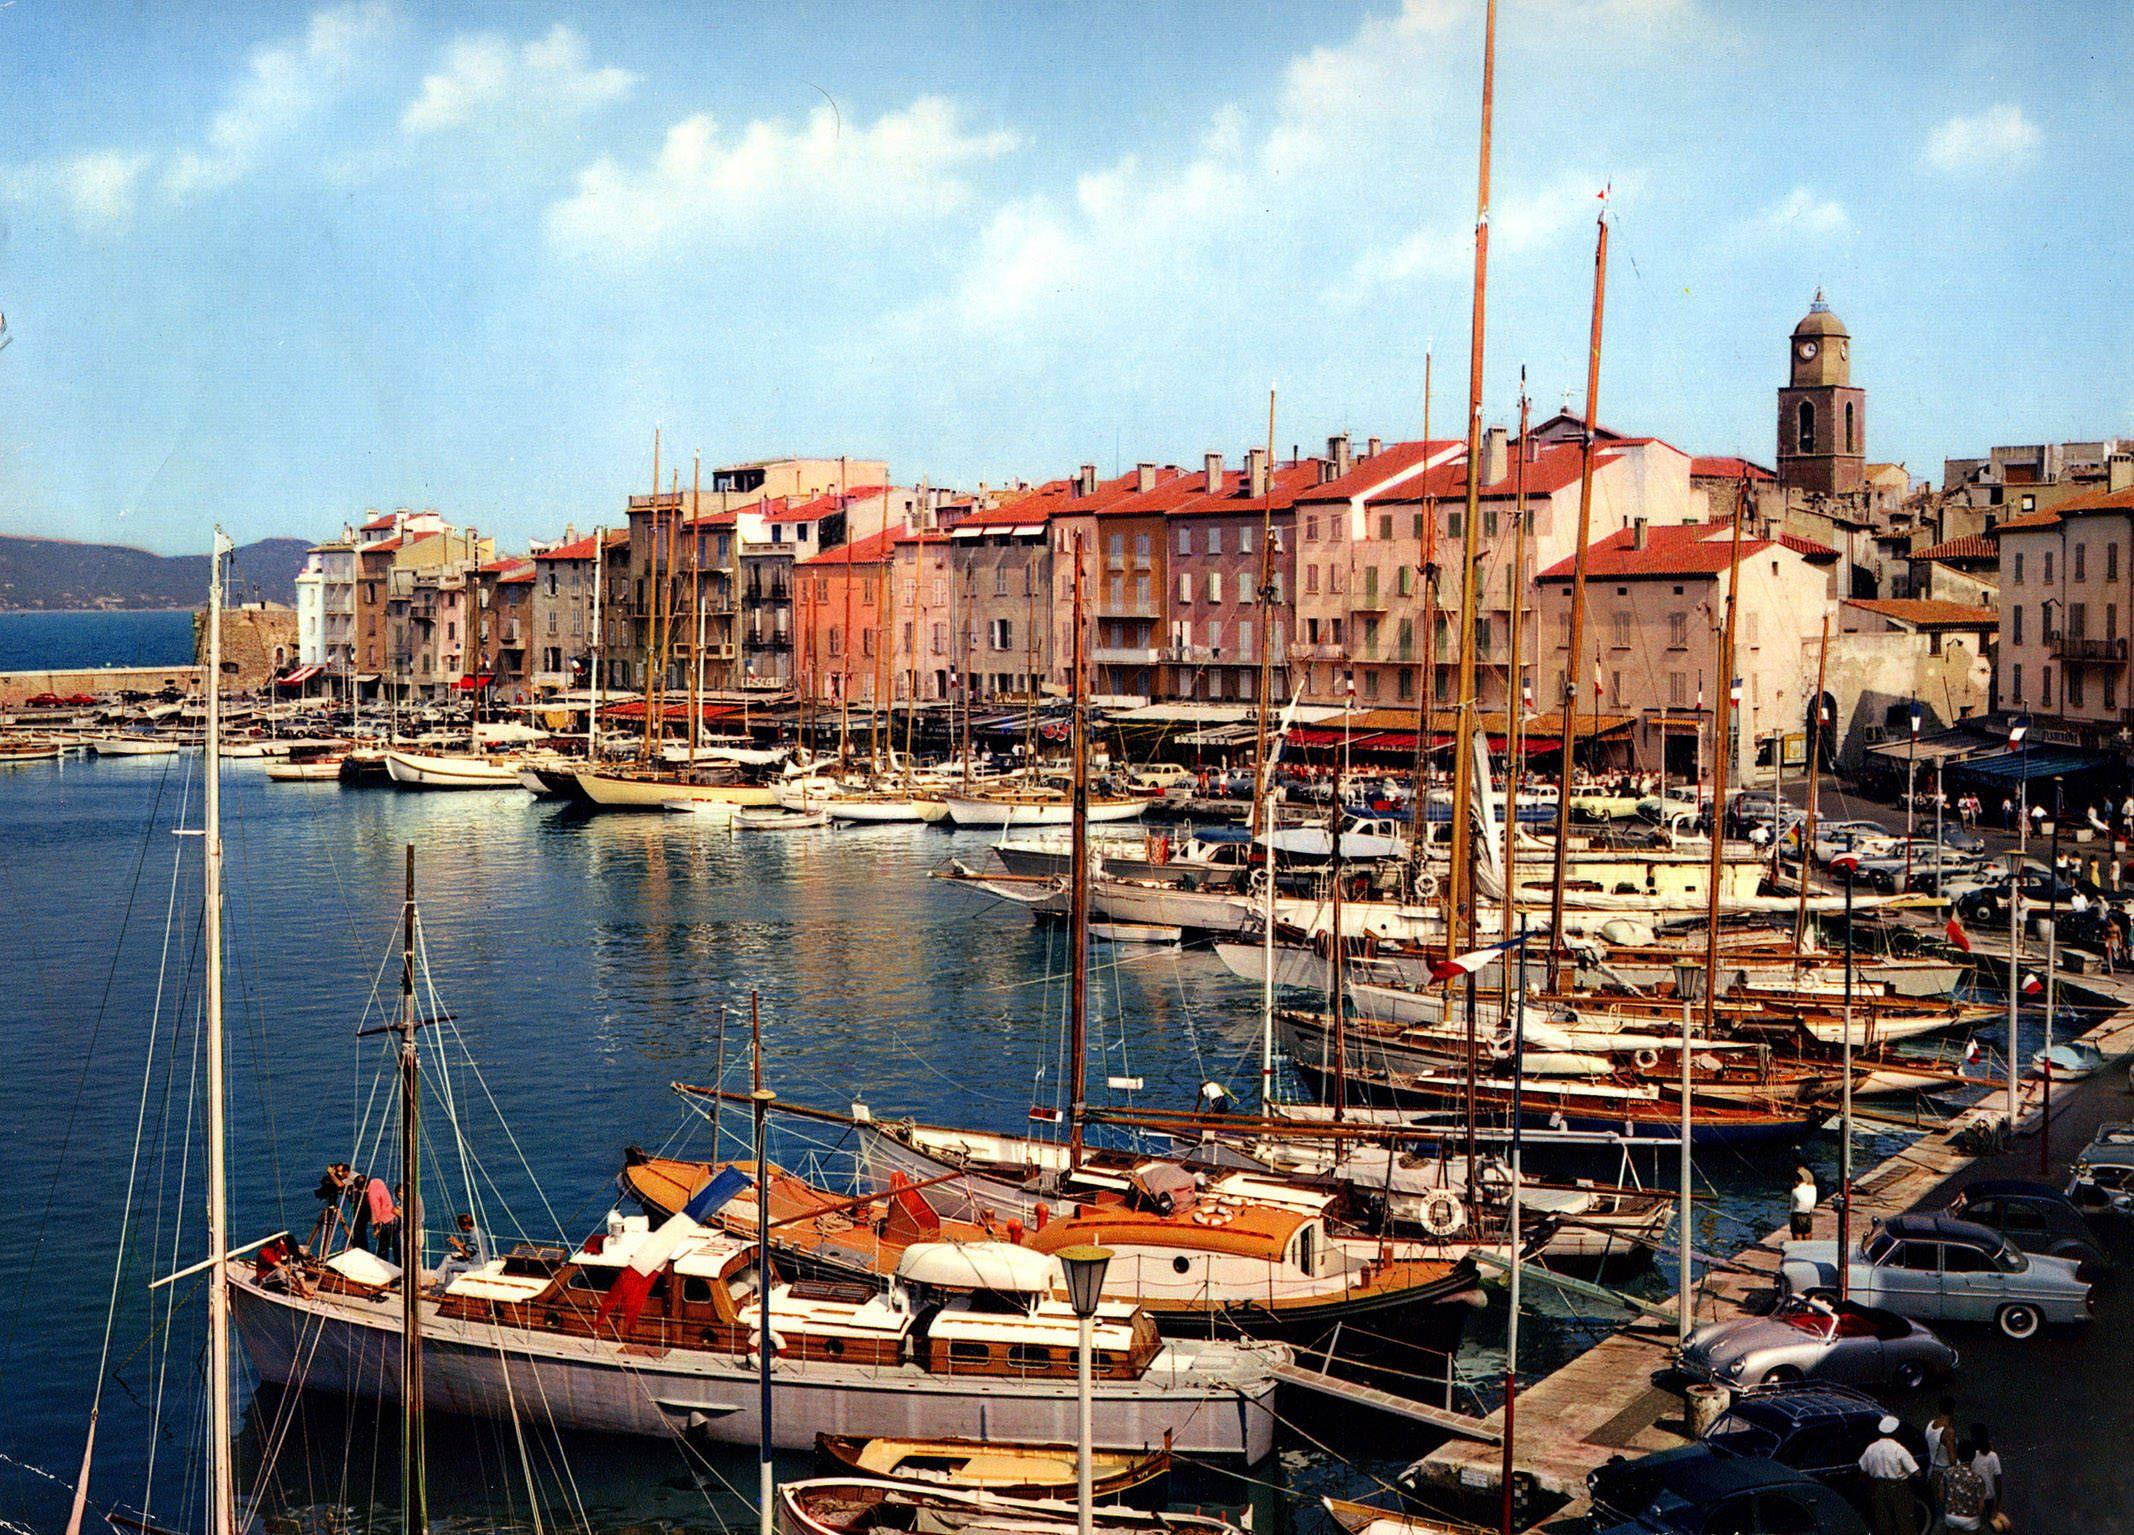 The Port Of Genoa, Italy, wallpaper 840.5 KB. p: 2134x1535